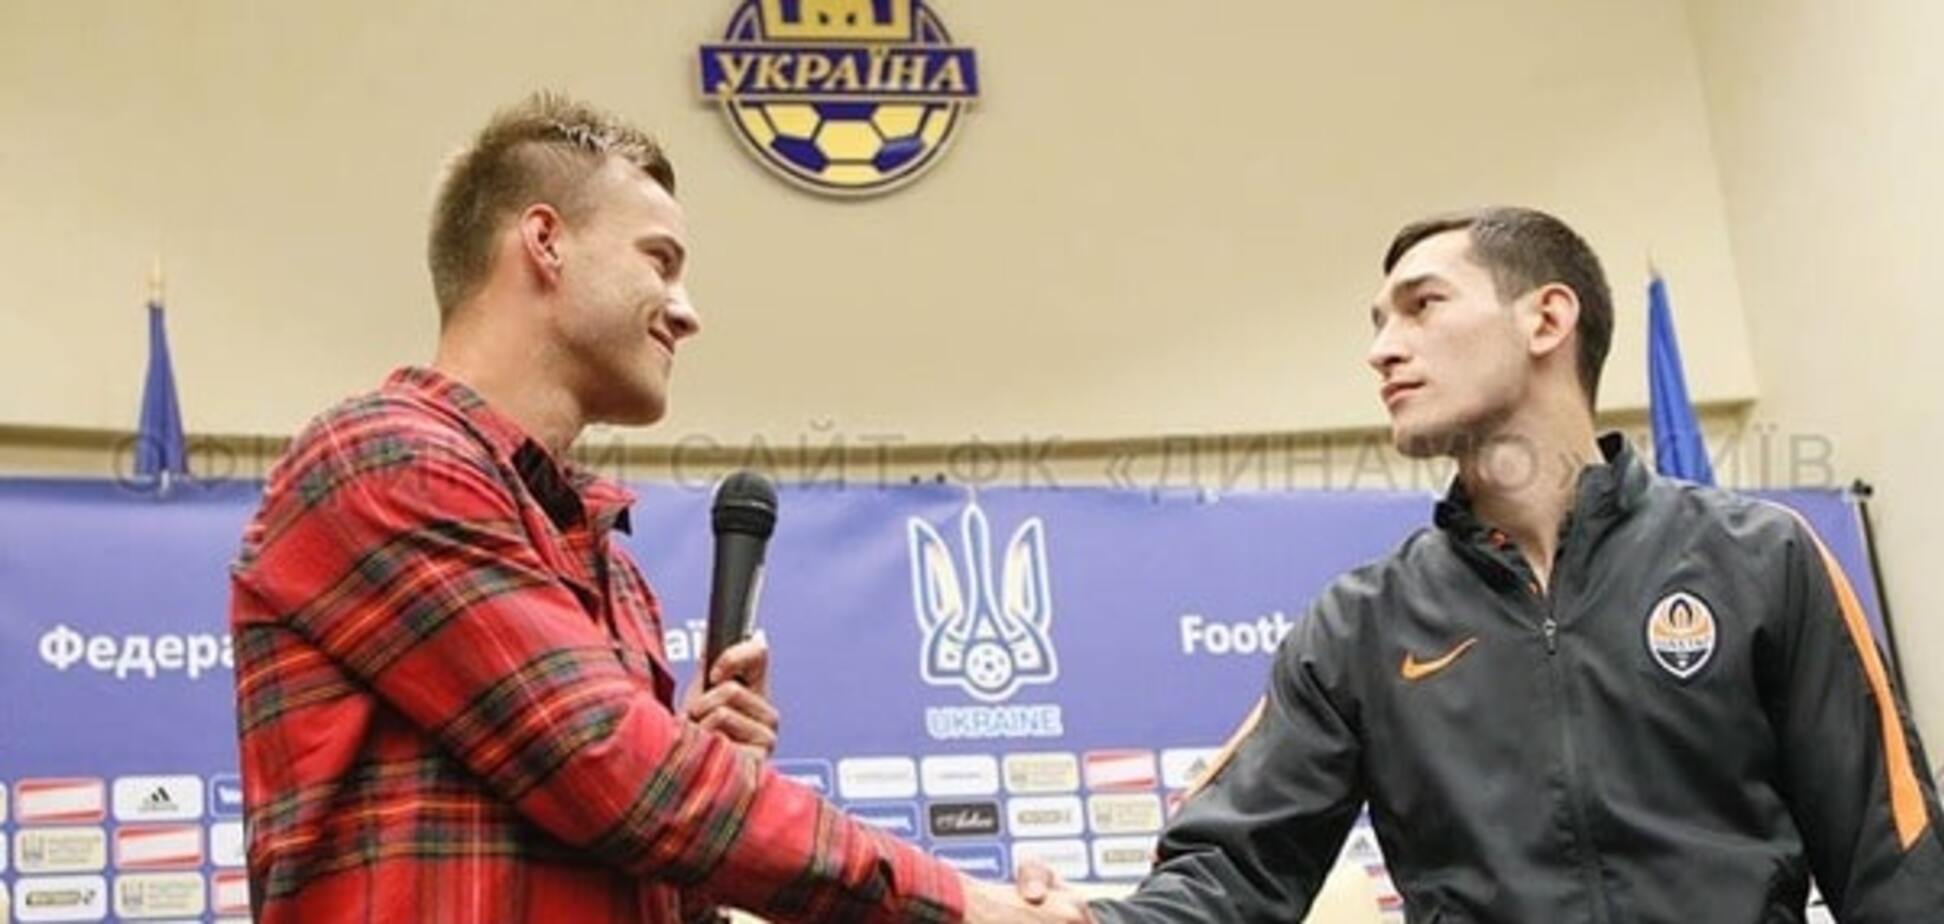 Фото дня: Степаненко и Ярмоленко впервые встретились после скандала в матче 'Шахтер' – 'Динамо'